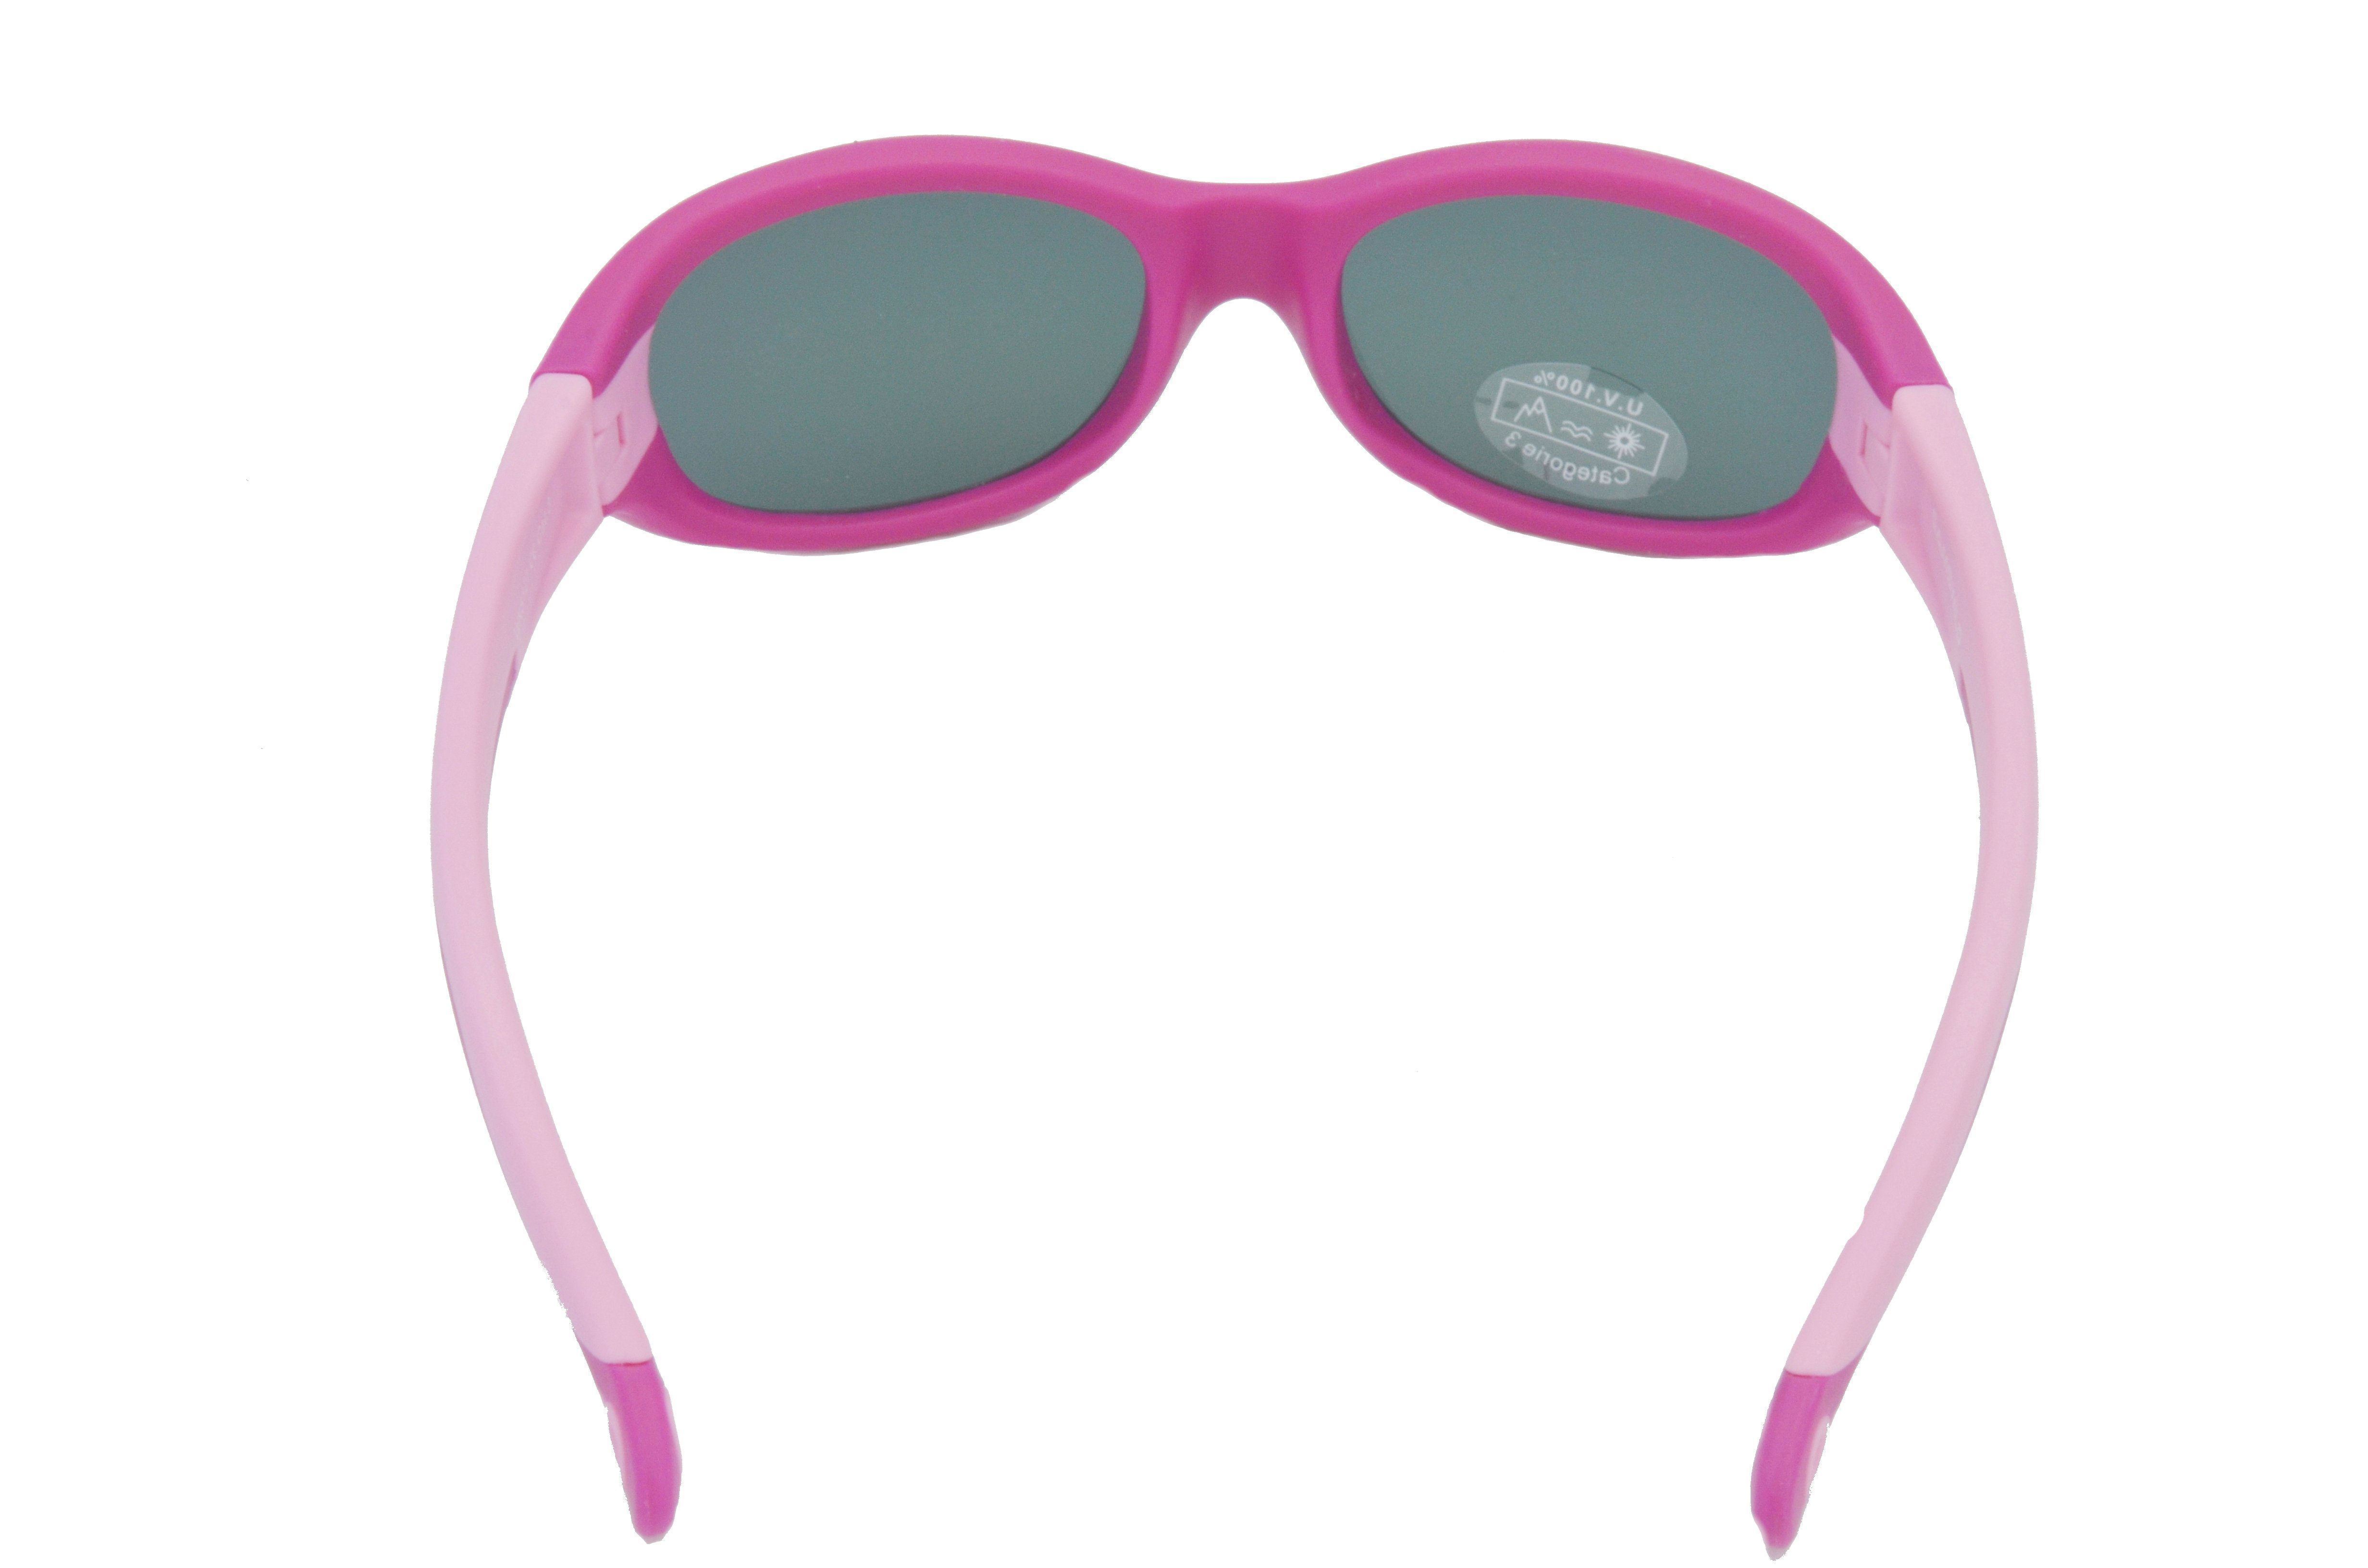 Gamswild Sonnenbrille WK5121 kids Unisex, Mädchen grün, Kinderbrille Jahre 3-6 Jungen GAMSKIDS blau, rosa Kleinkindbrille